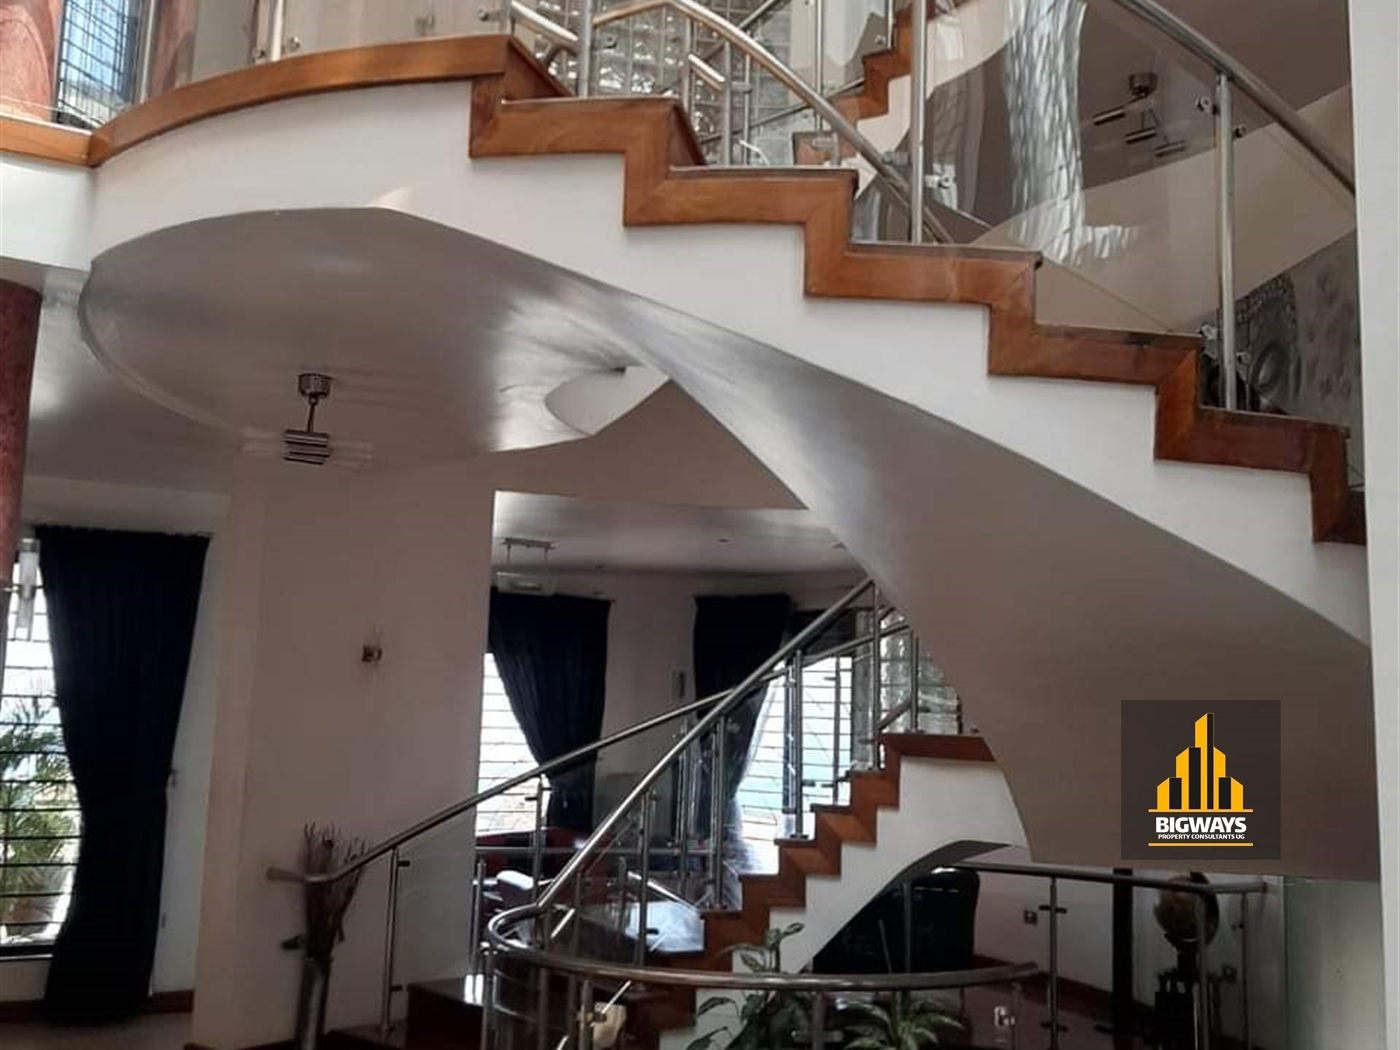 Villa for sale in Naguru Kampala